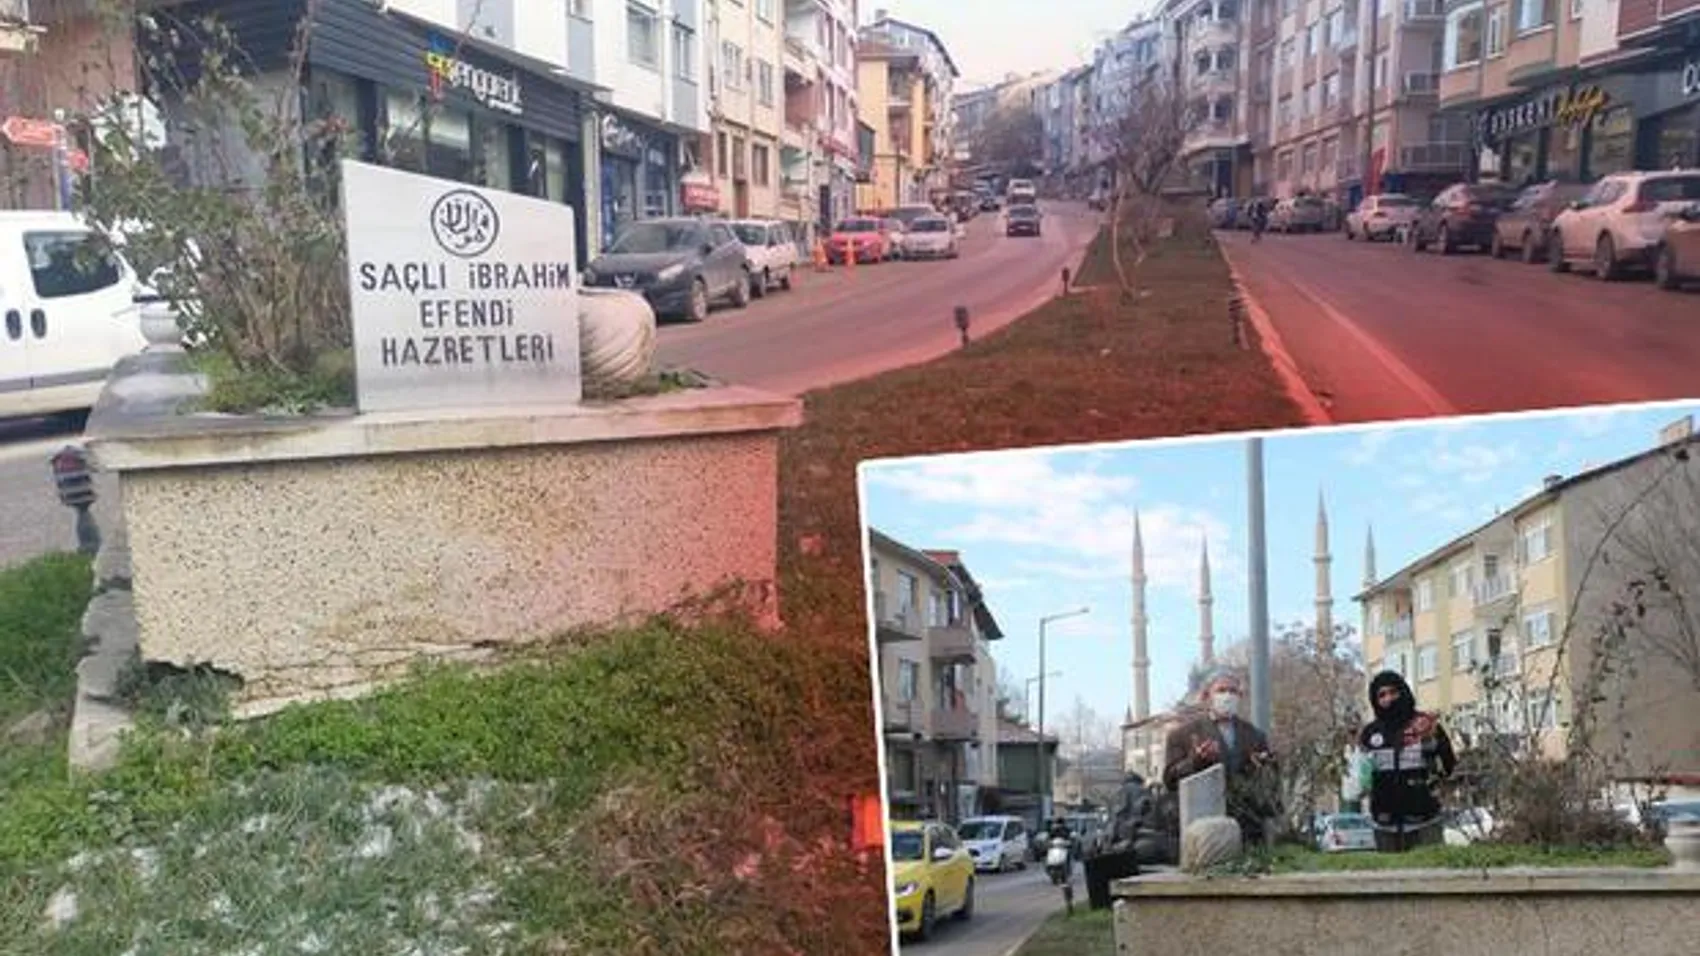 Edirne’de şaşırtan görüntü! Cadde ortasındaki mezarlar dikkat çekiyor